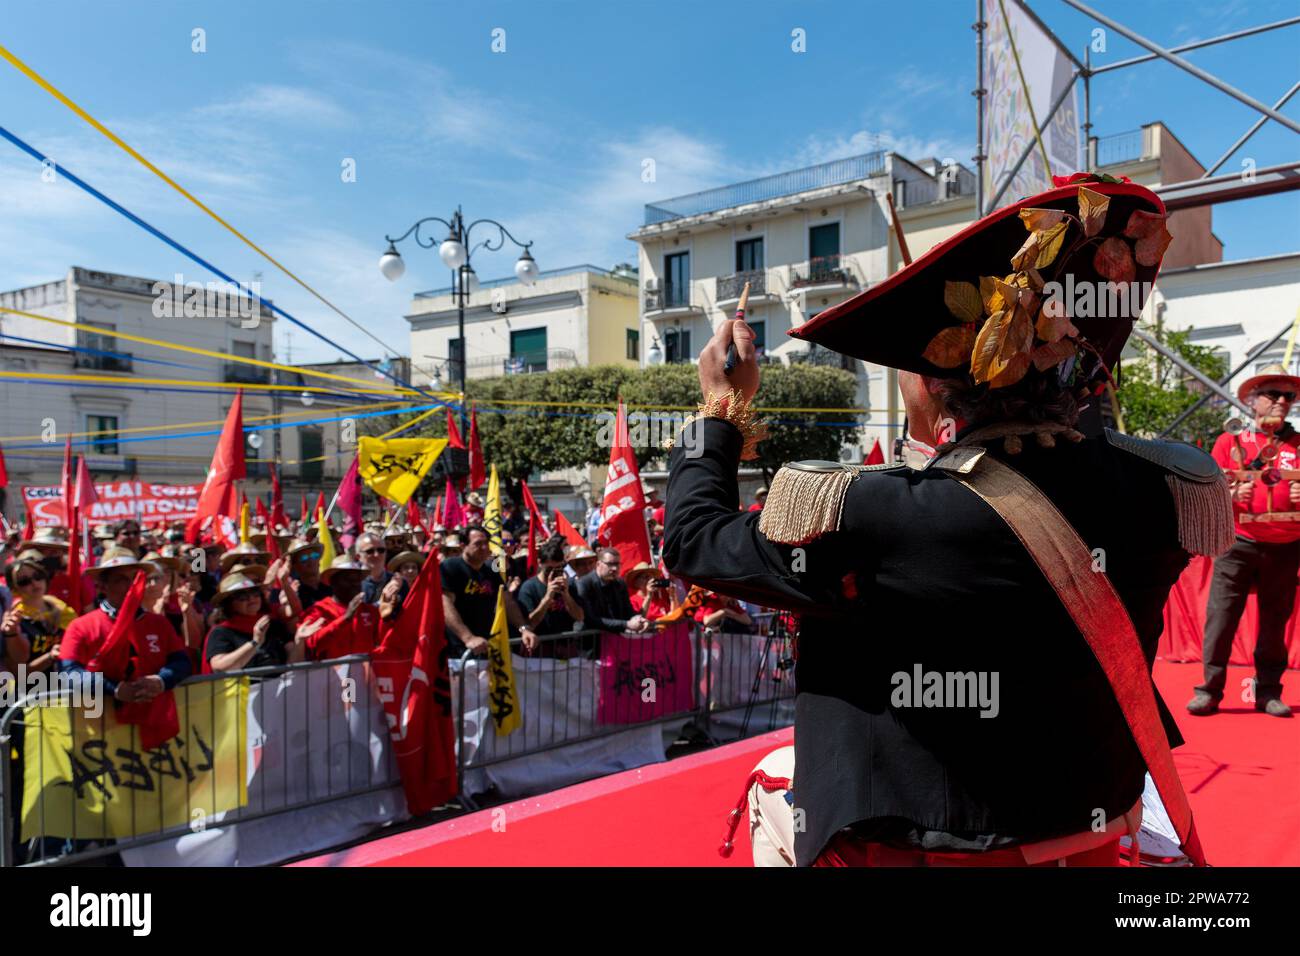 A Scafati ‘La legalità ha radici profonde’: grande manifestazione in difesa del Fondo Nappo e dei beni confiscati. Stock Photo